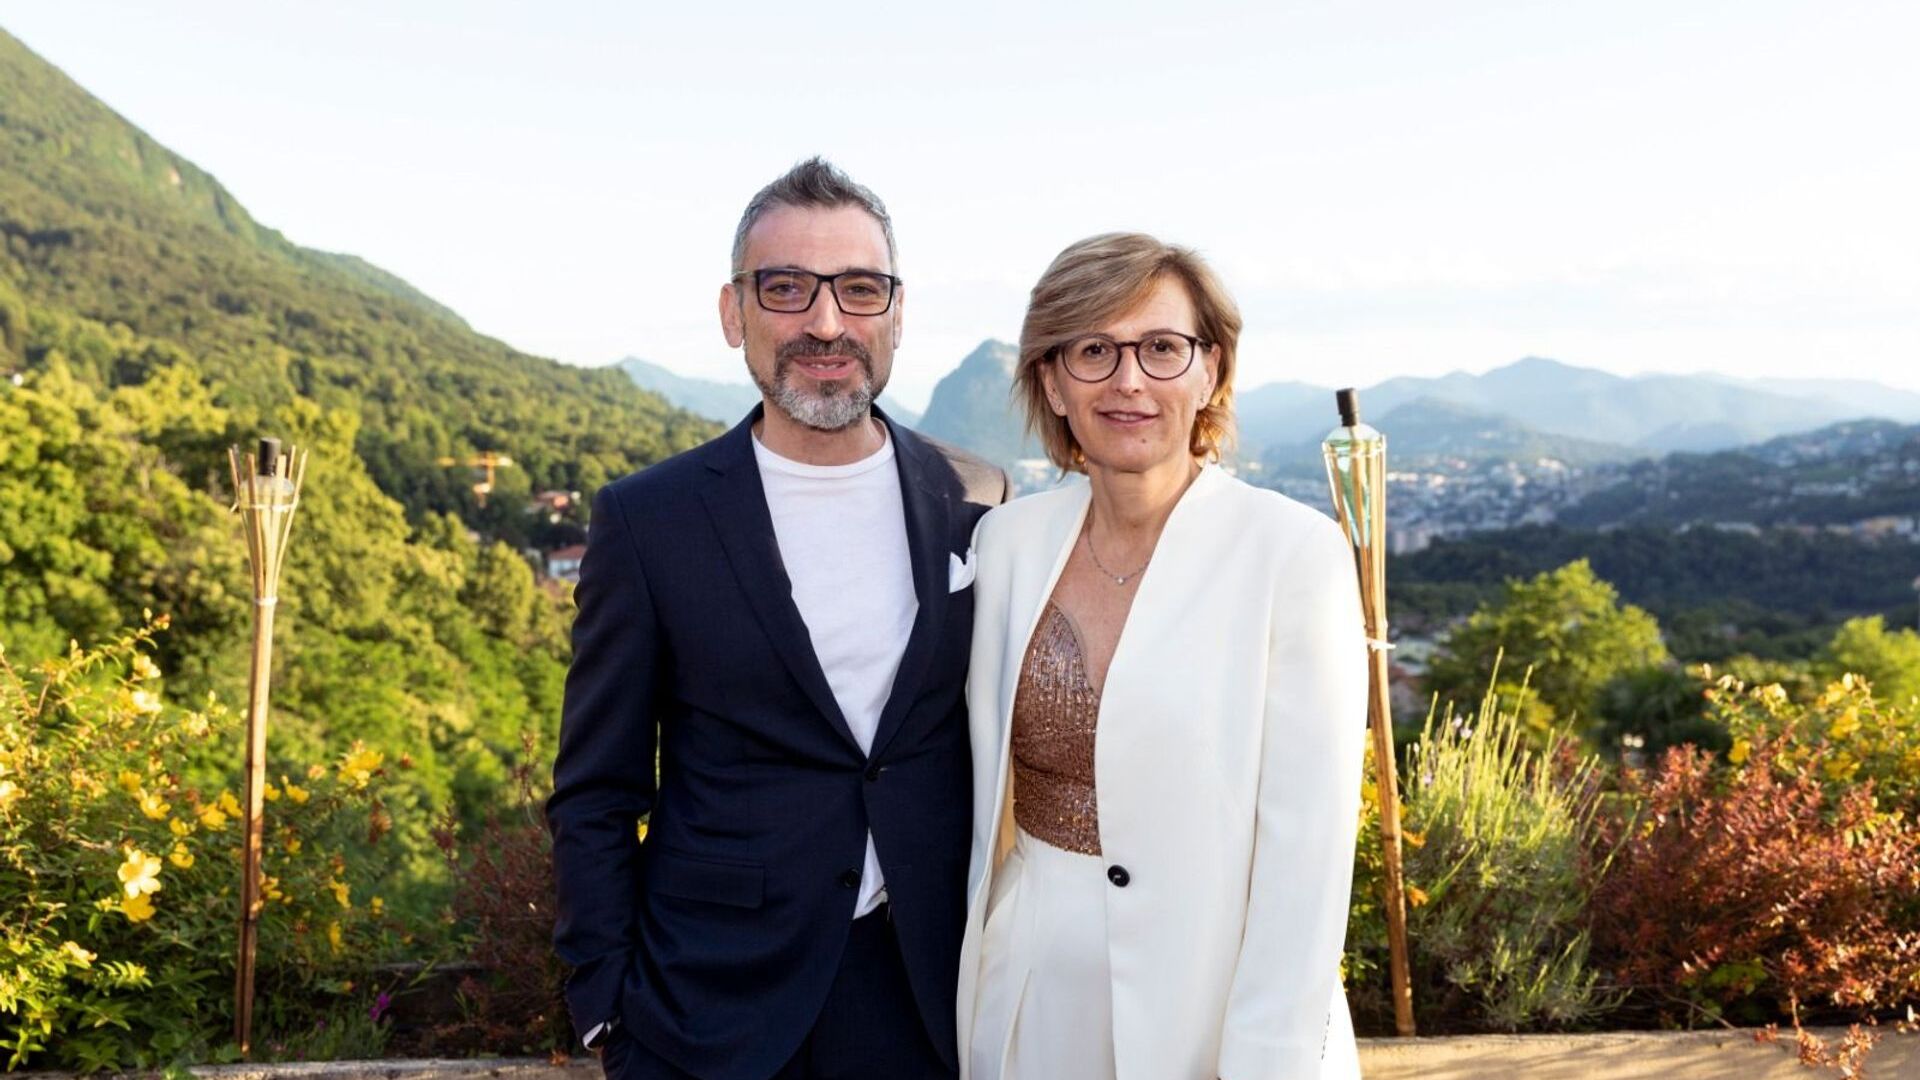 Cristina Giotto, presidentti, ja Luca Mauriello, varatoimitusjohtaja, ovat ated-ICT Ticinon uusi ylin johto.